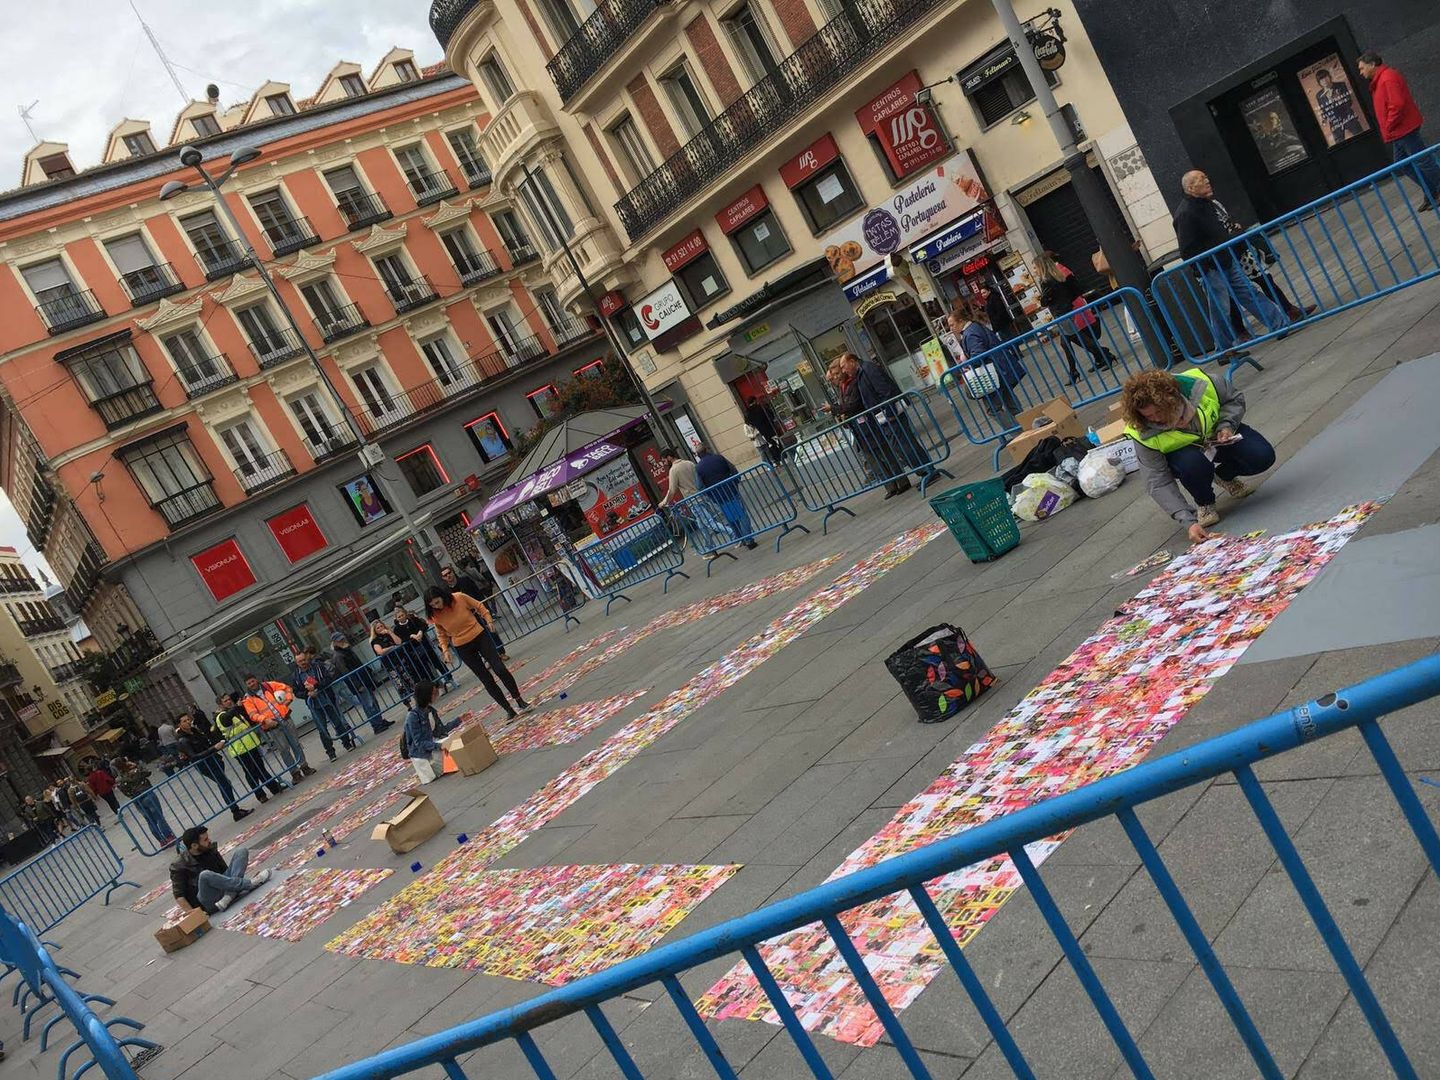 Voluntarios forman la palabra 'Help' con tarjetas en la plaza de Callao de Madrid. (Cedida)